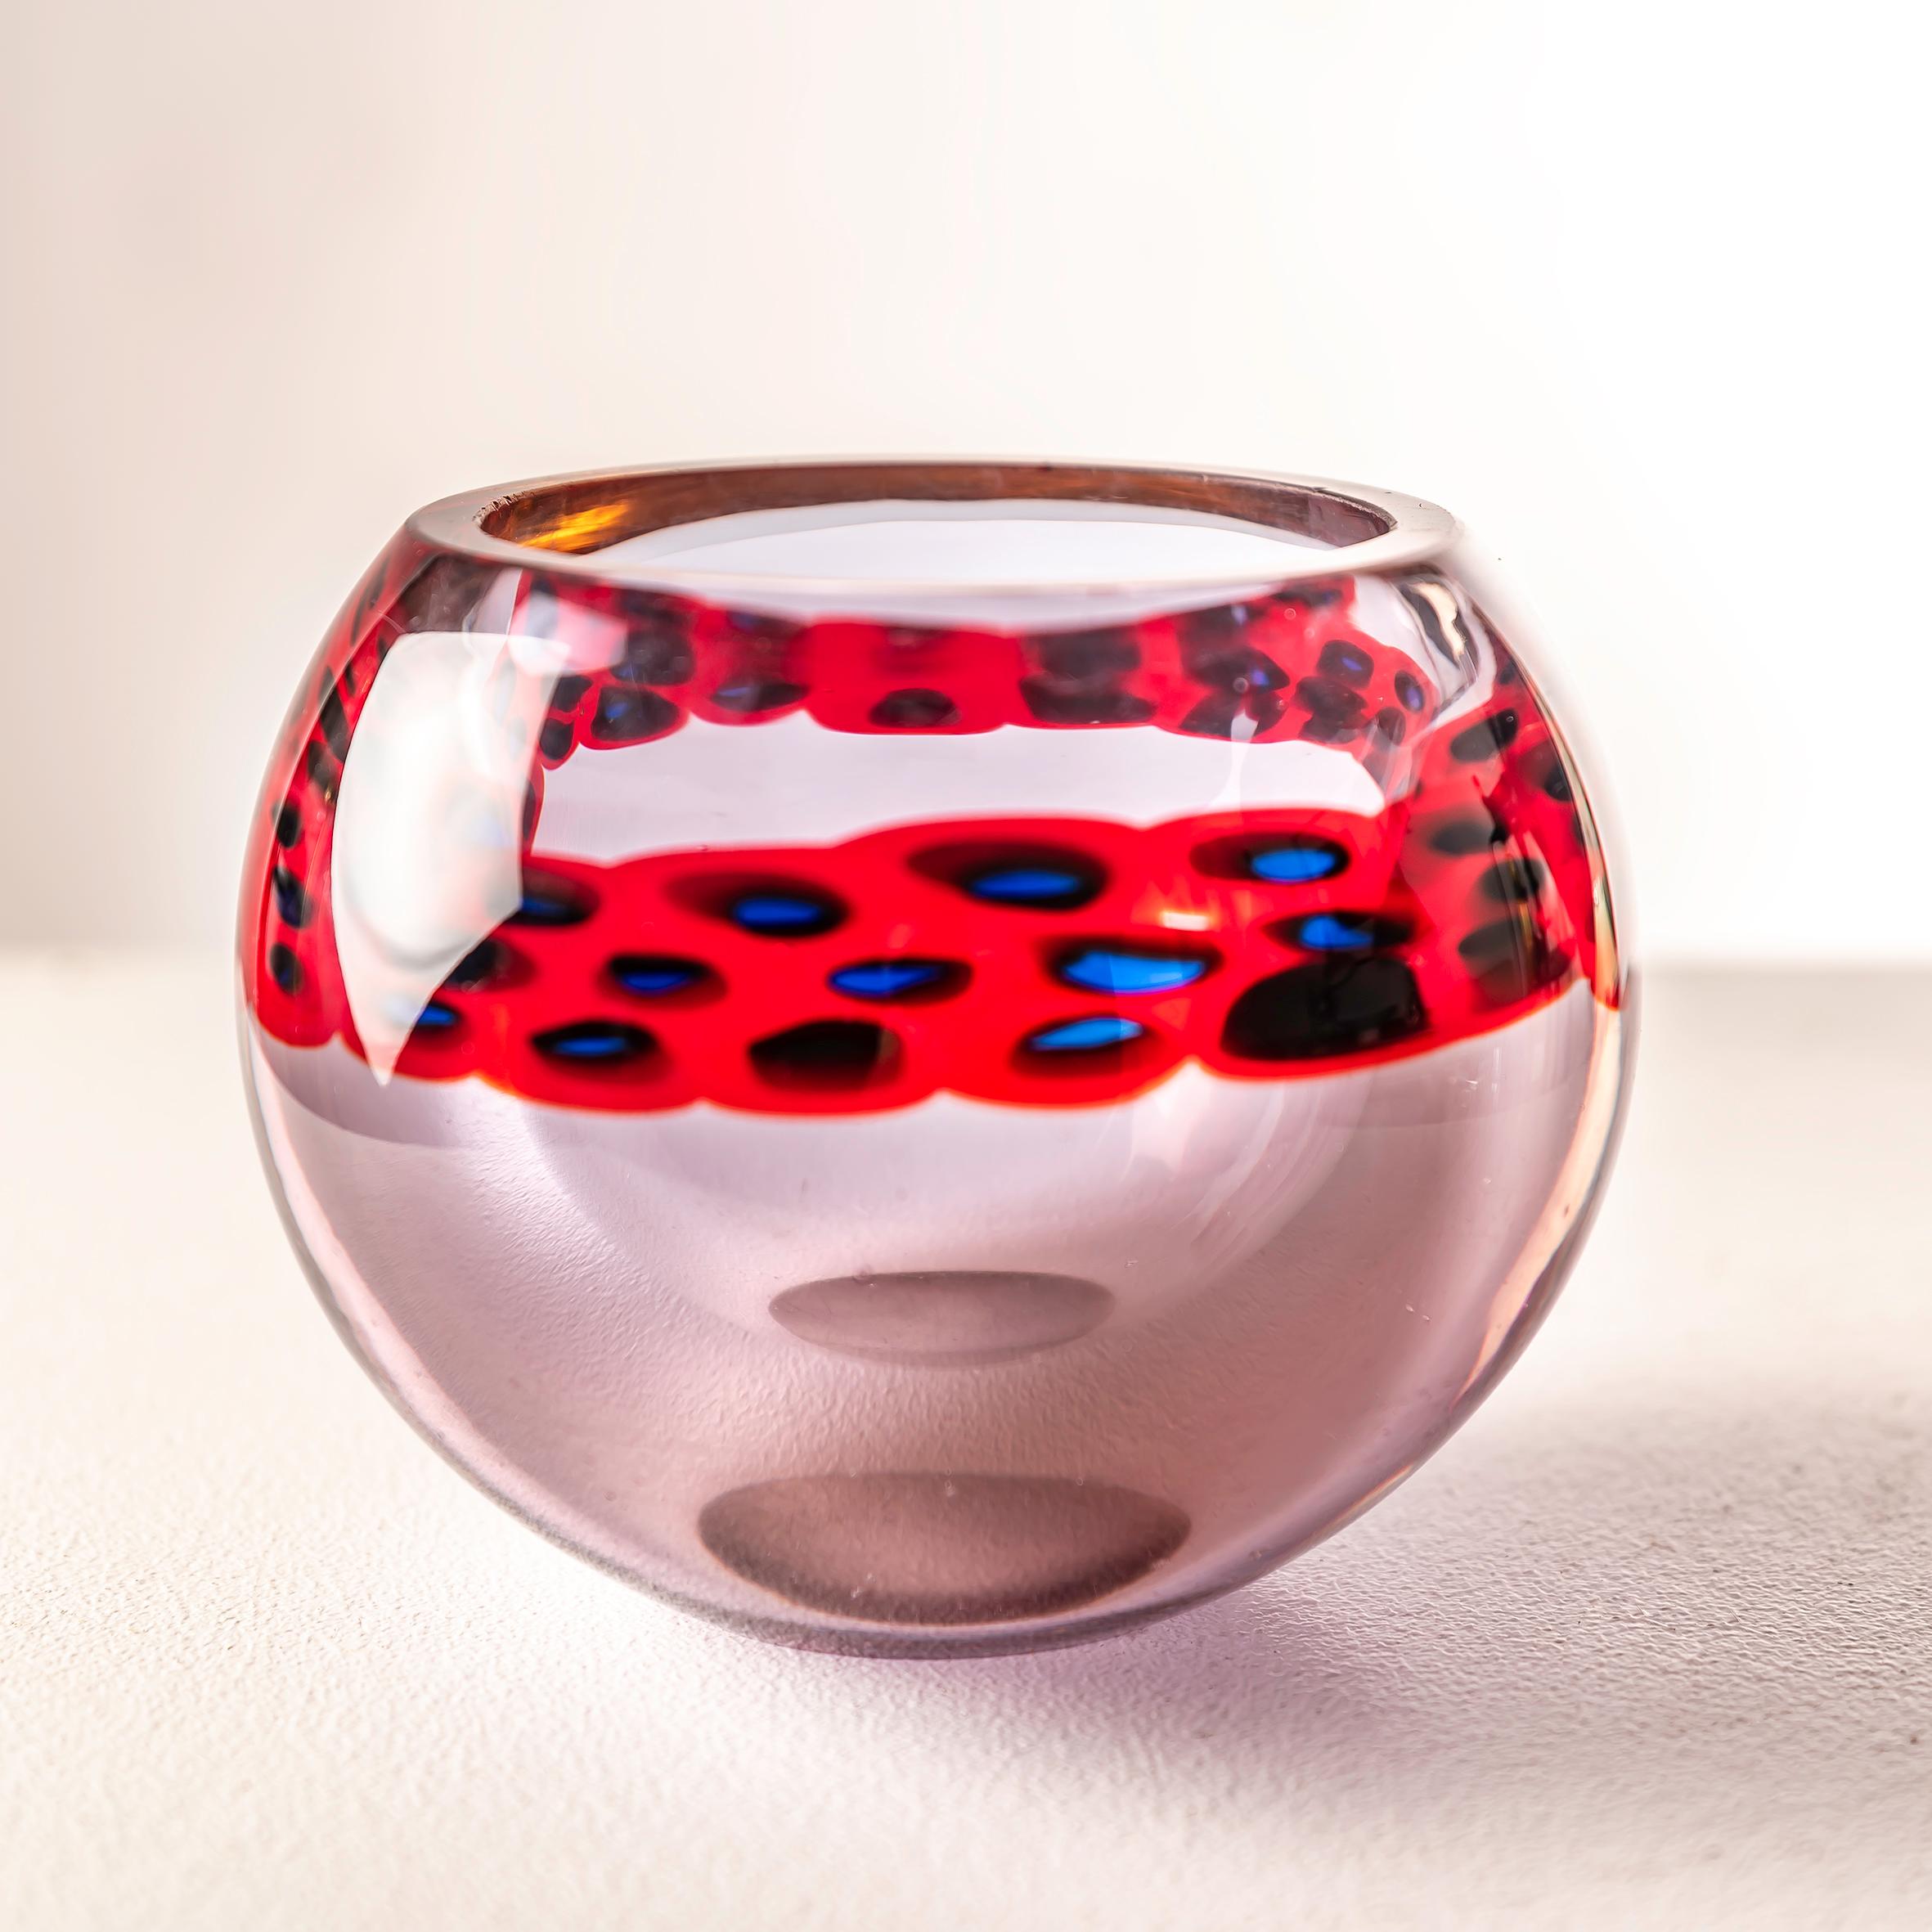 El jarrón de cristal Murrine de Antonio da Ros para Cenedese, Italia, hacia la década de 1960, entrelaza vibrantes tonos rojos y tranquilizantes azules en una danza de maestría vidriera. La delicadeza de Da Ros amplifica el encanto de la técnica